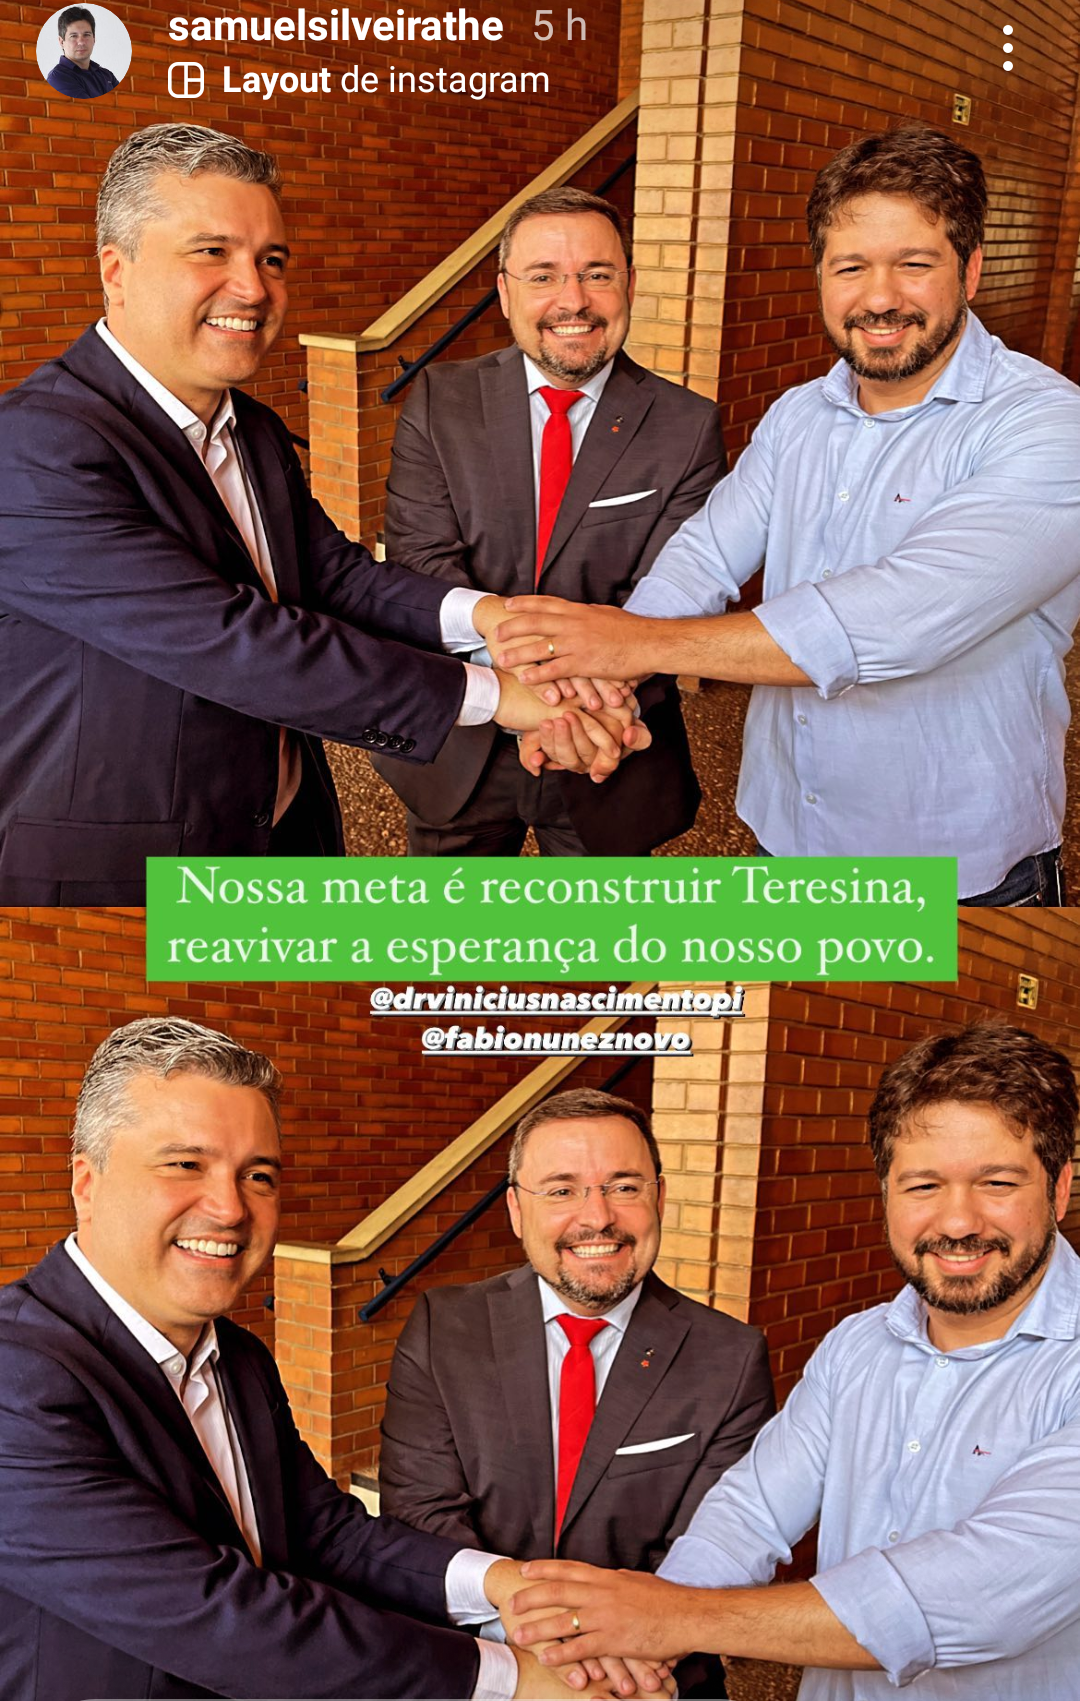 Da esquerda para a direita: Dr. Vinícius, Fábio Novo e Samuel Silveira (foto: Reprodução | Instagram)